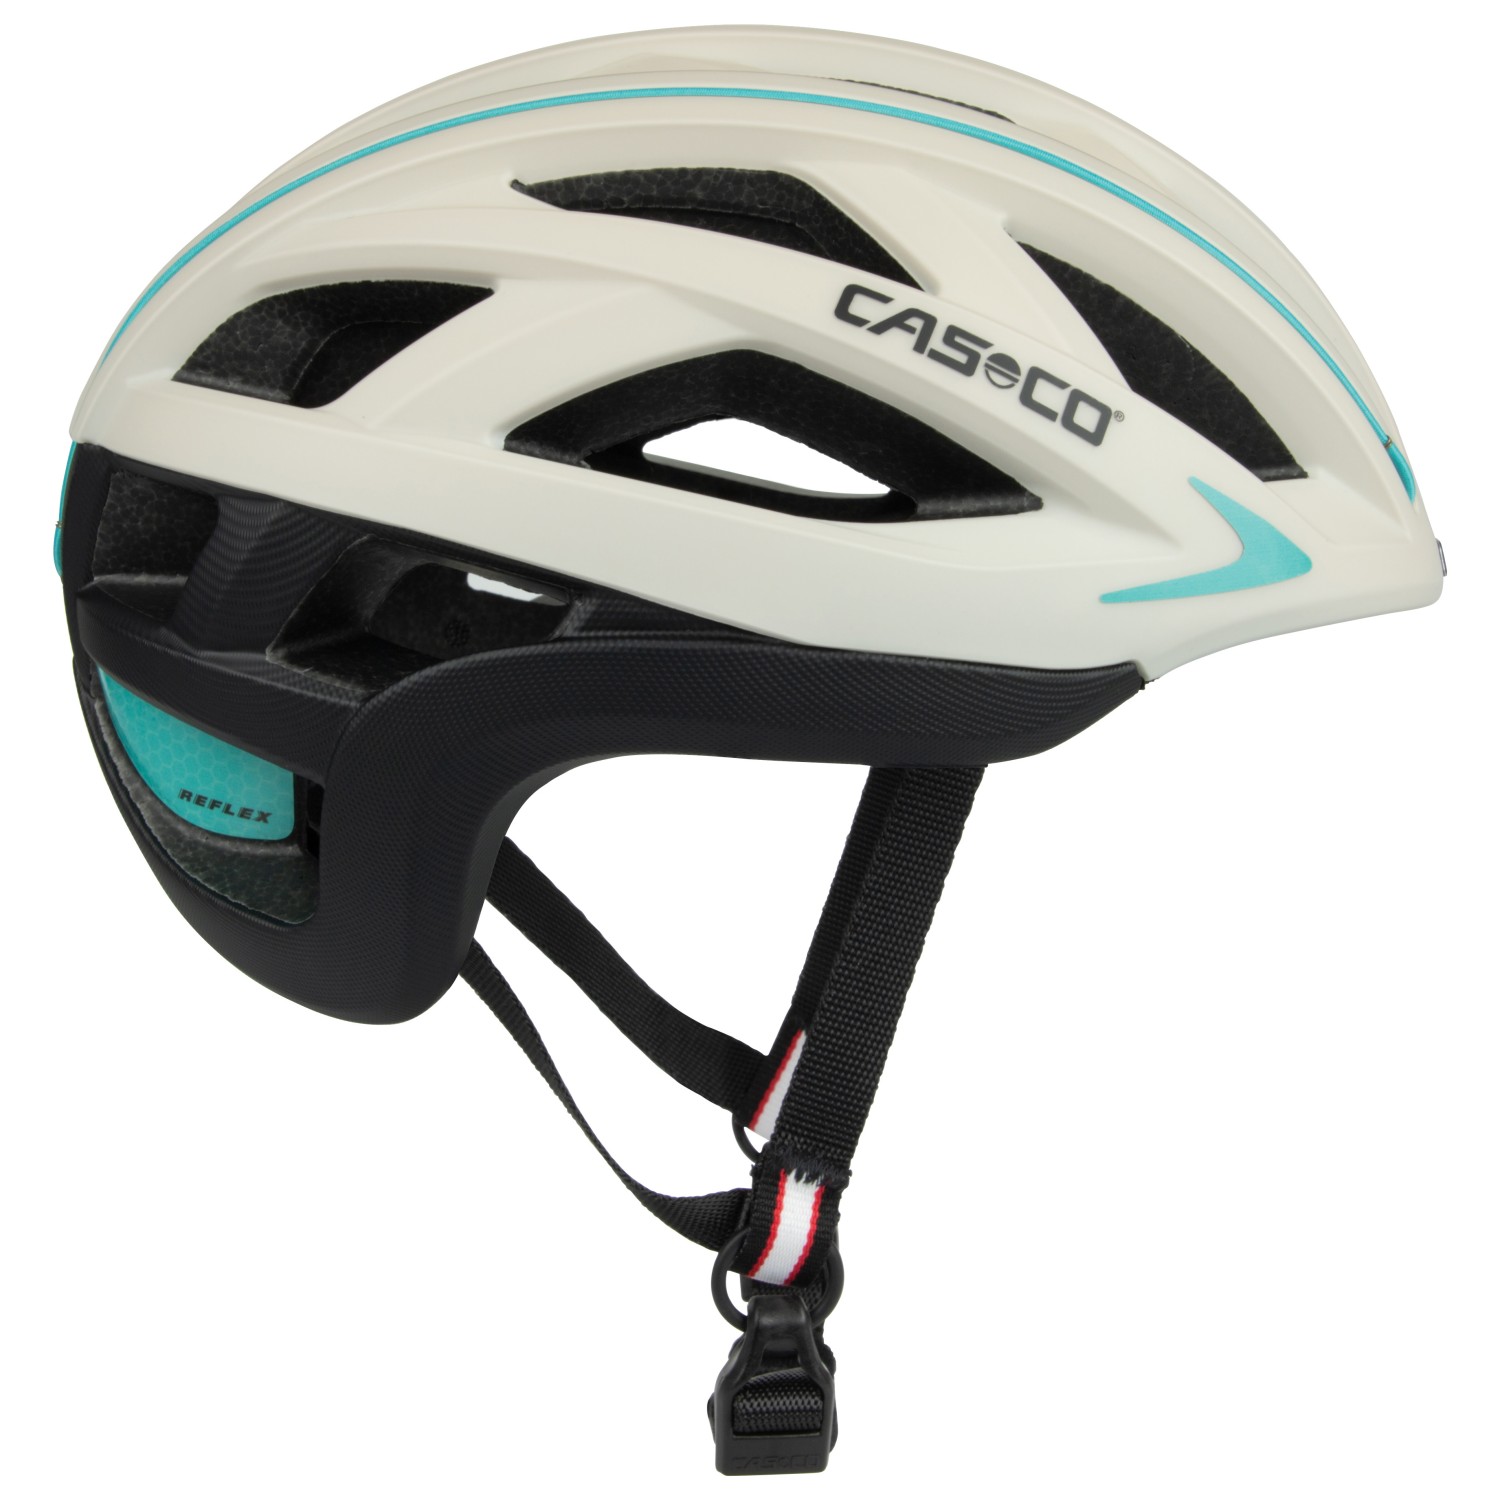 Велосипедный шлем Casco Cuda 2 Strada, цвет White/Turquise/Black шлем casco cuda 2